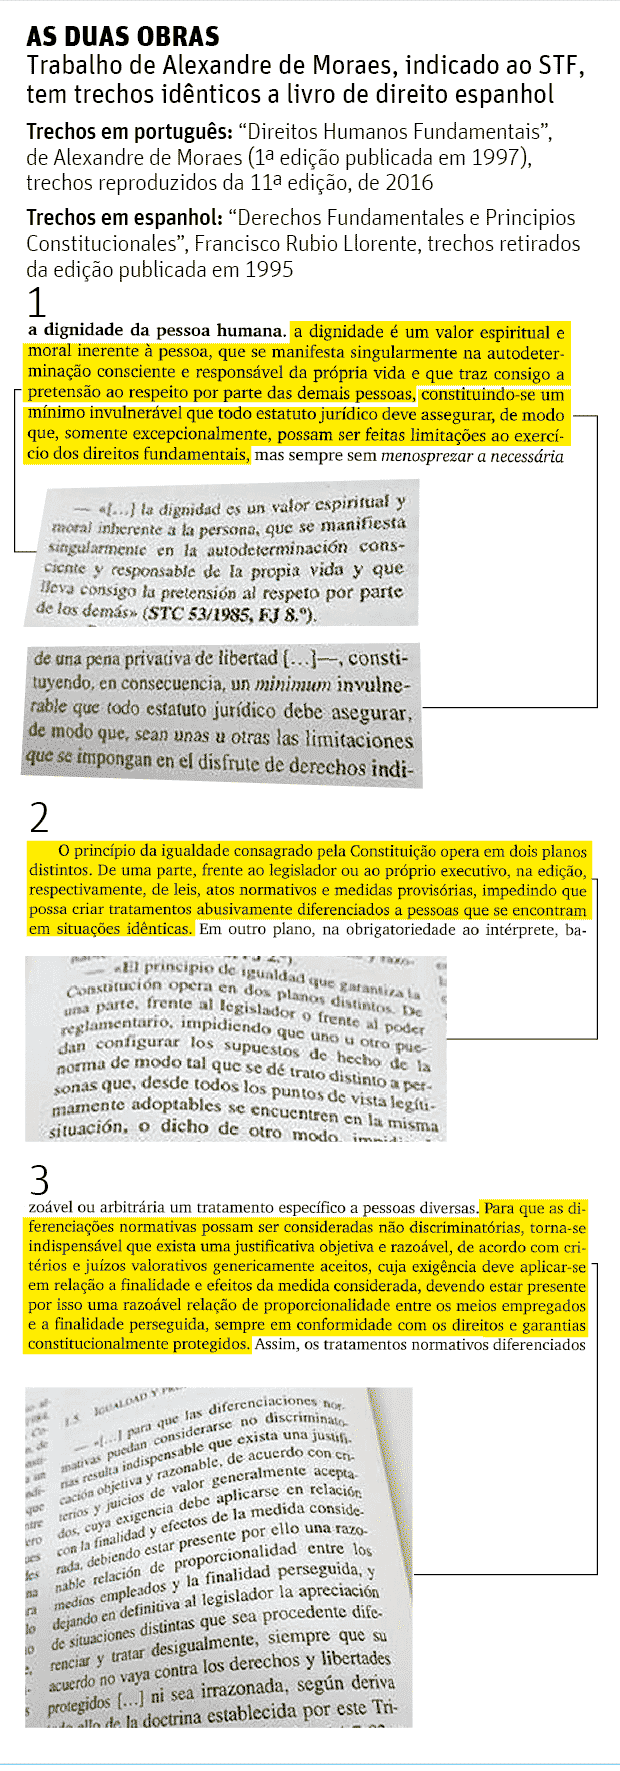 AS DUAS OBRAS Trabalho de Alexandre de Moraes, indicado ao STF, tem trechos idênticos a livro de direito espanhol